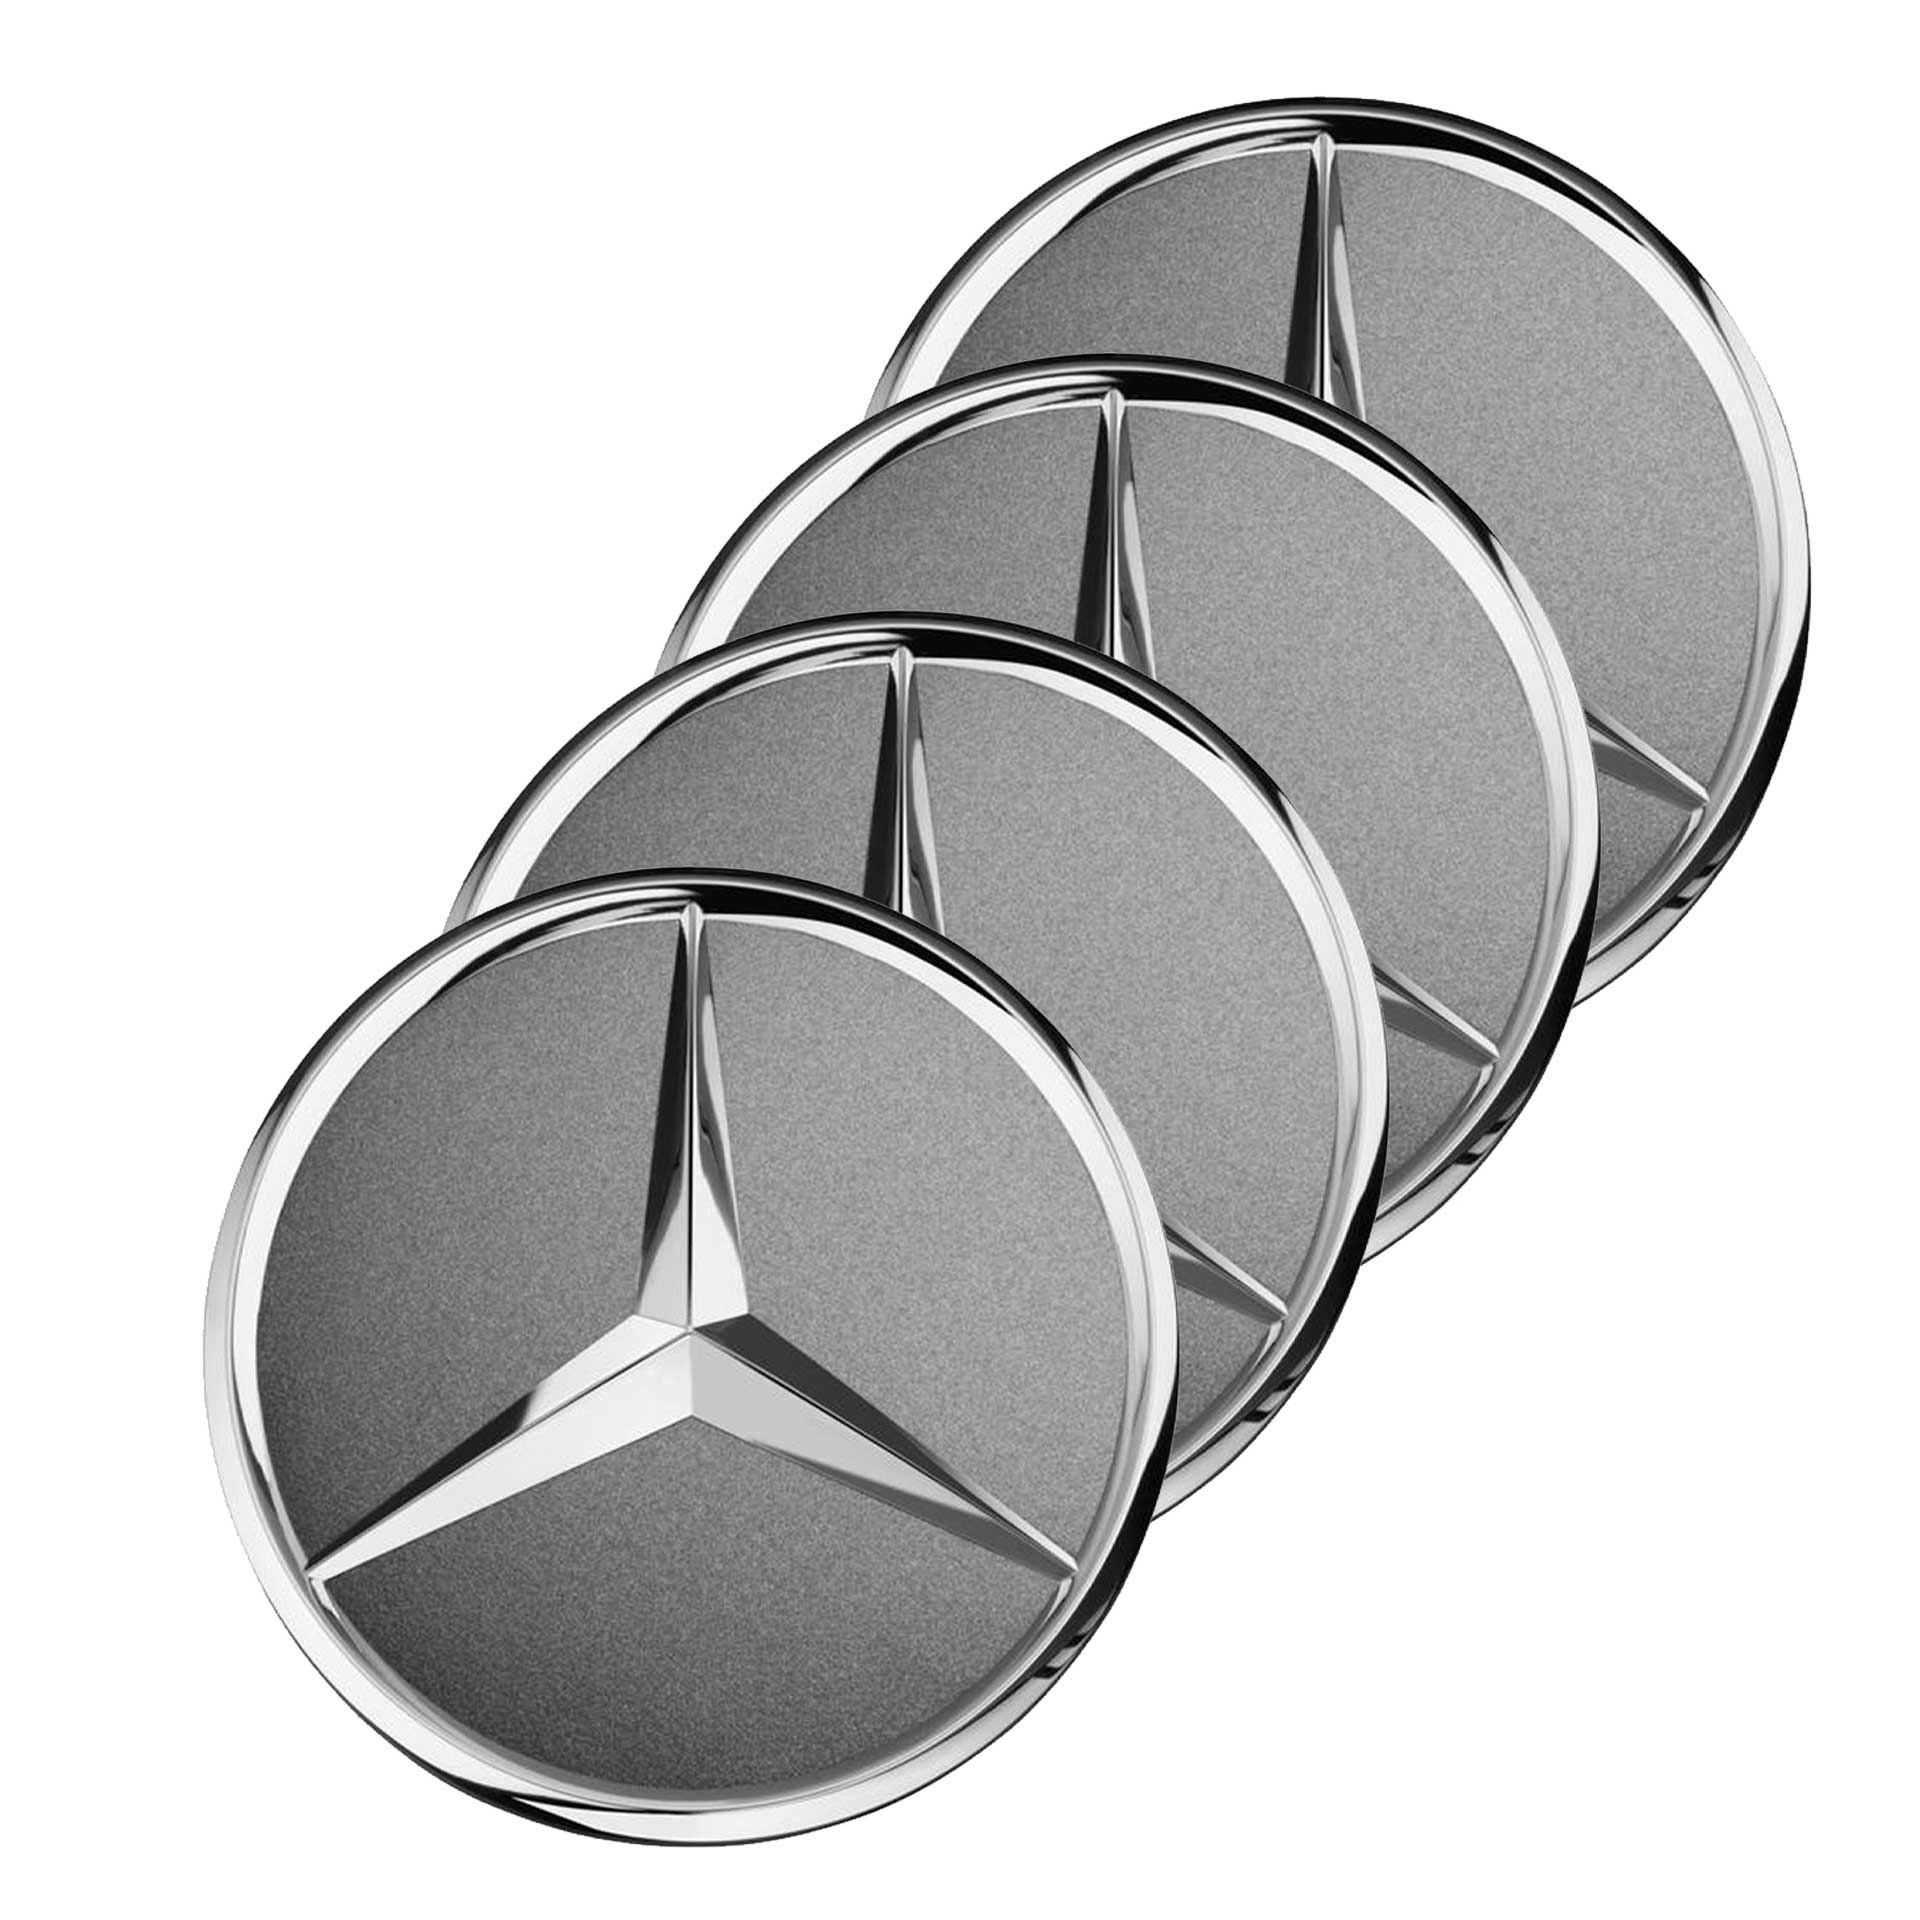 Mercedes-Benz Radnabenabdeckung Stern tantalgrau 4-teiliger Satz